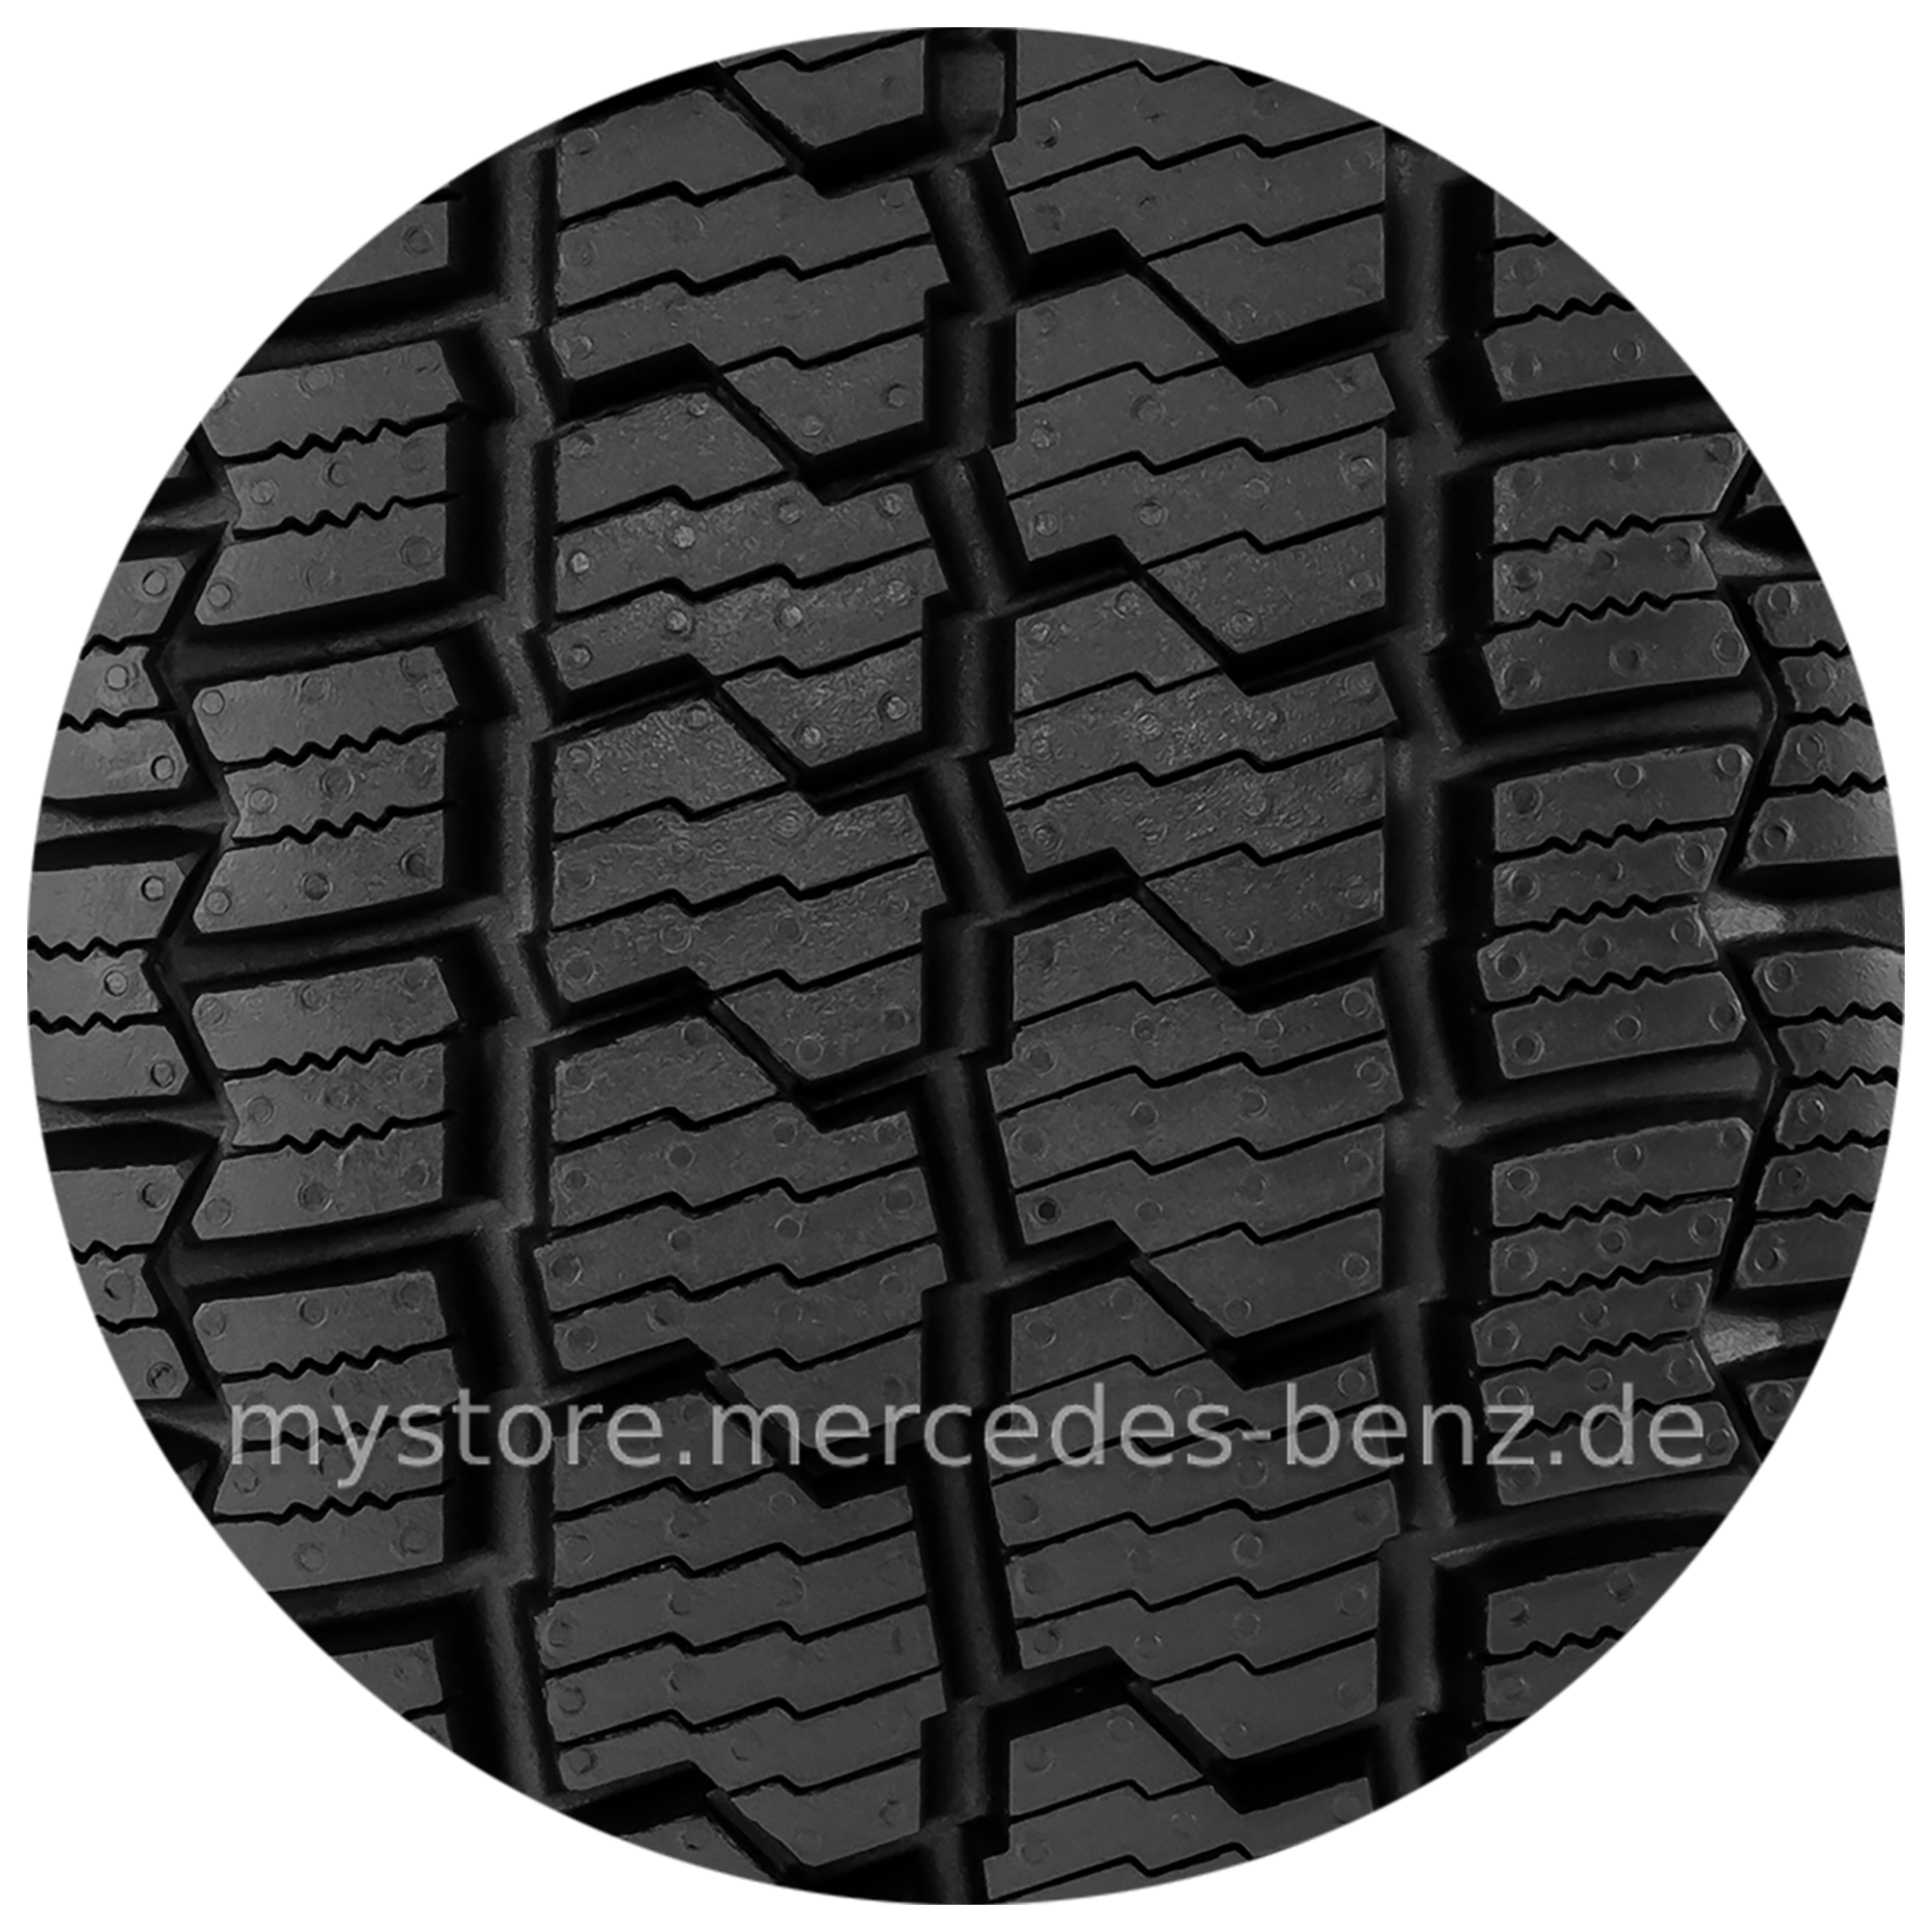 Räder & Reifen - Mercedes-Benz Store Online